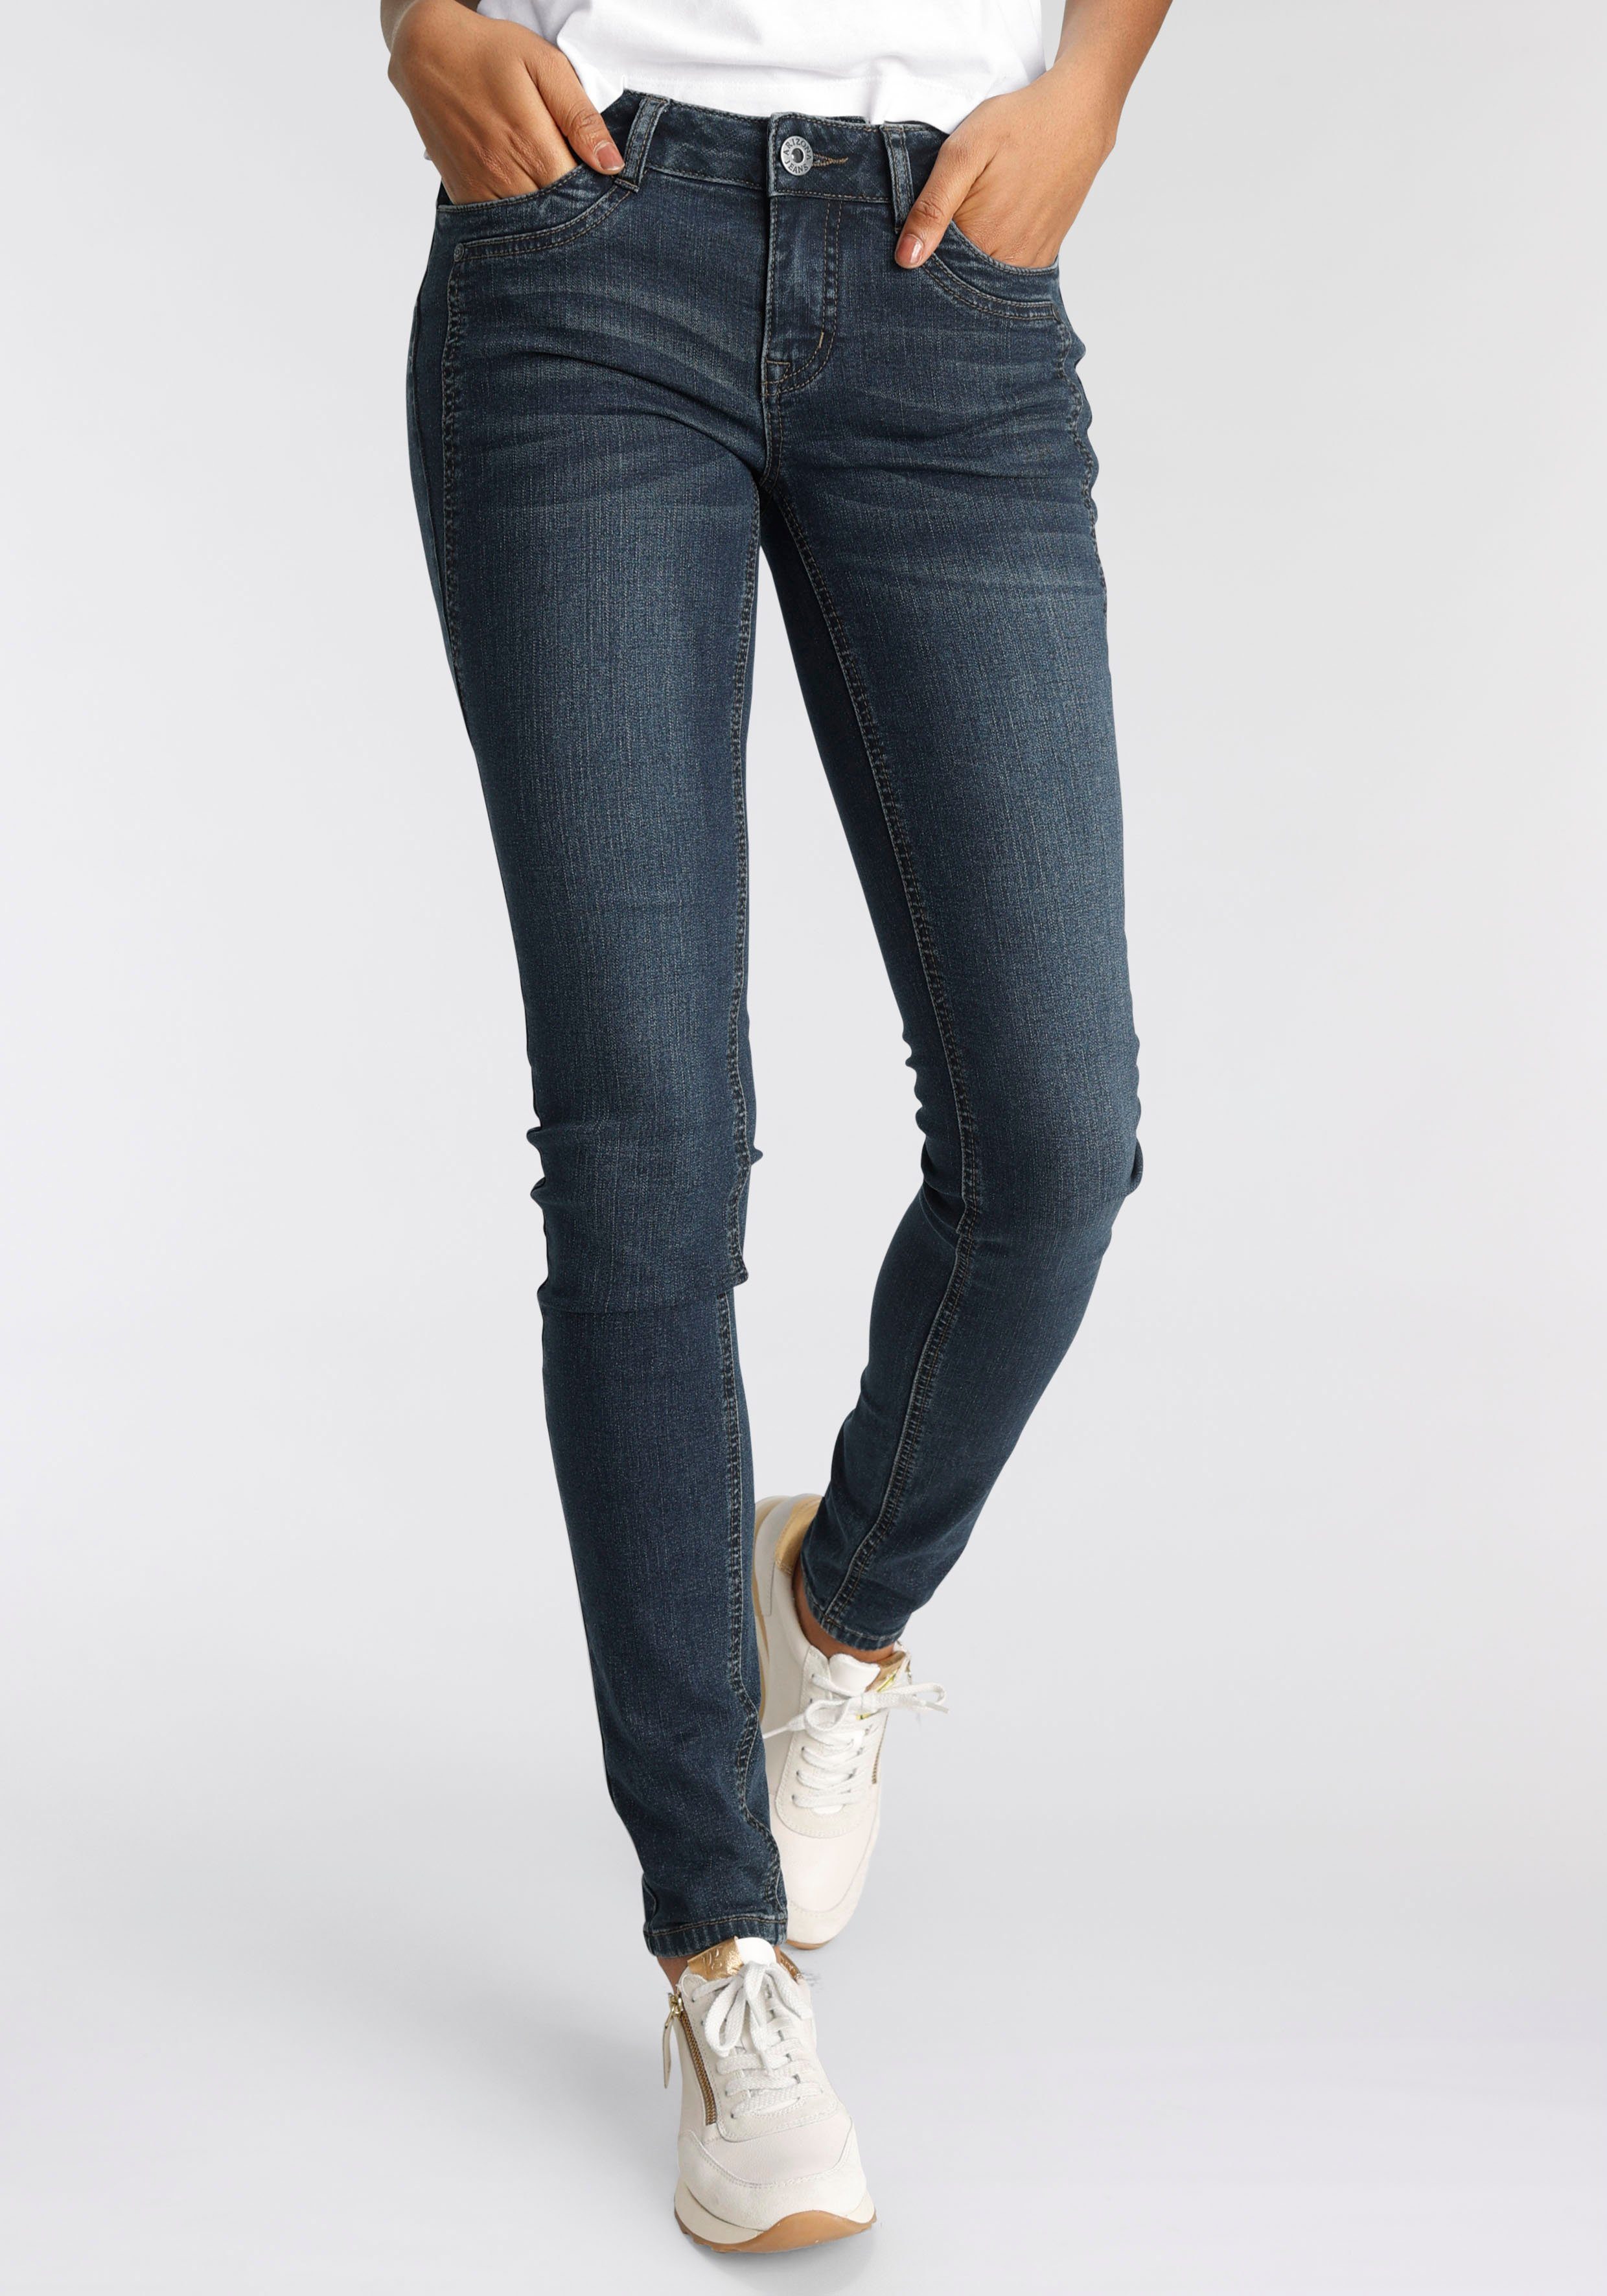 Arizona Skinny-fit-Jeans mit Keileinsätzen Low Waist darkblue-used